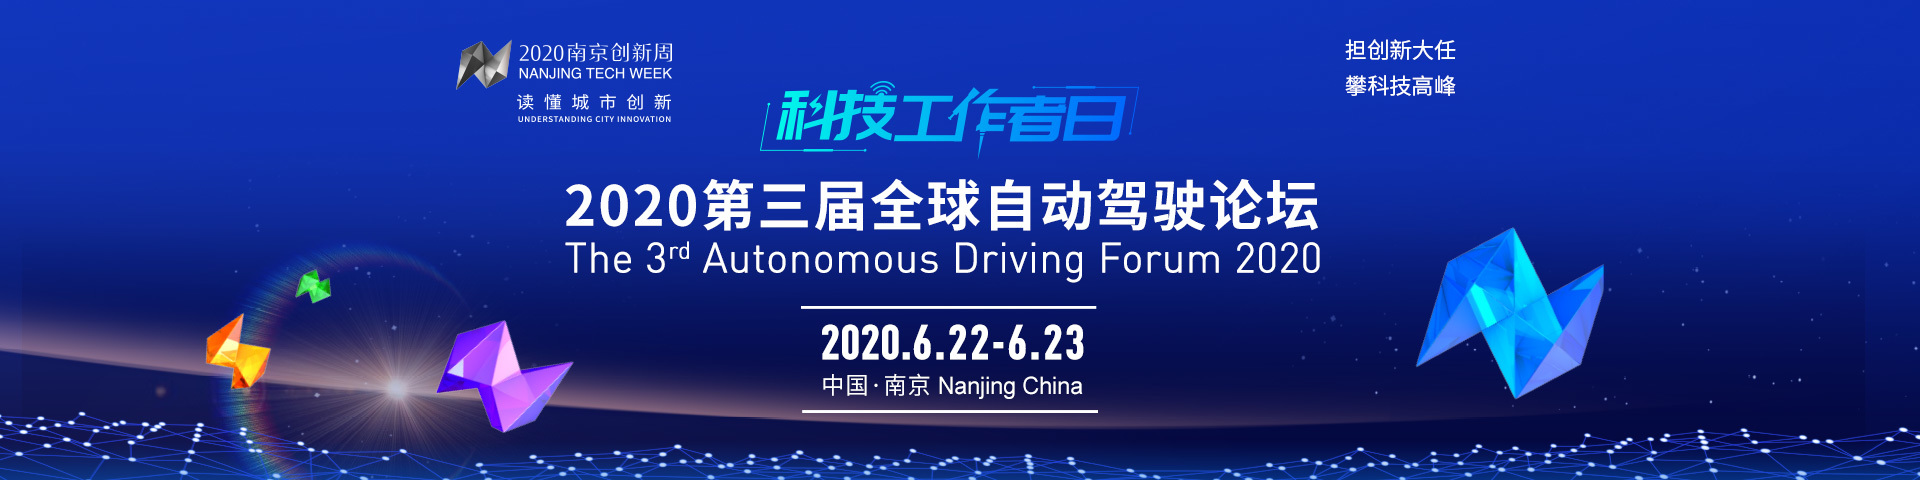 2020第三届全球自动驾驶论坛